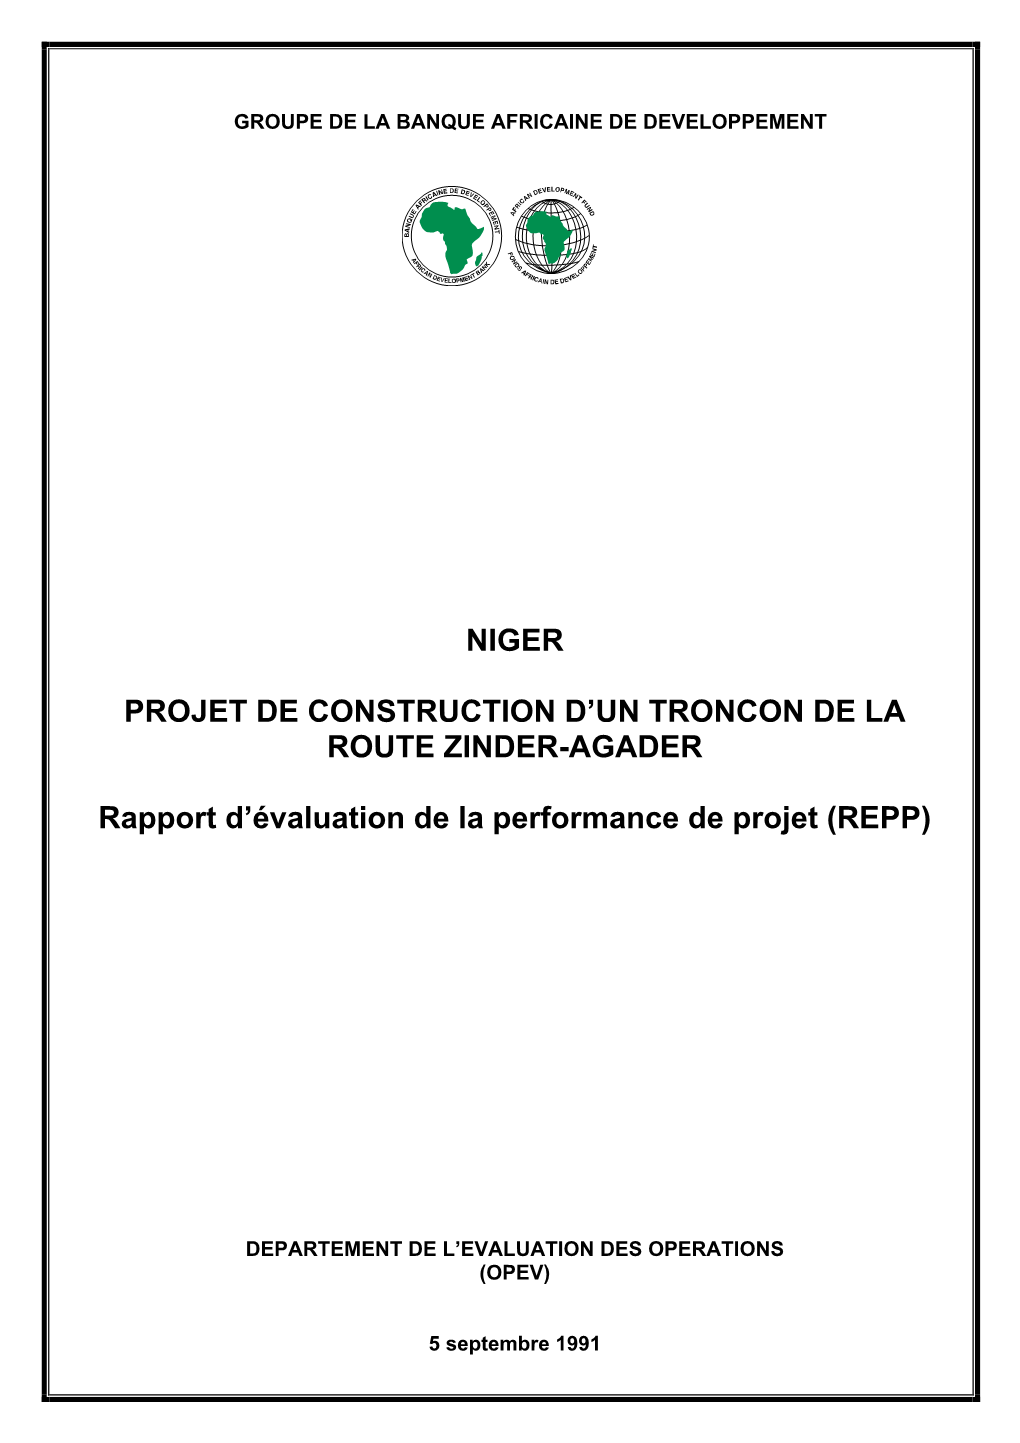 Niger: Projet De Construction D'un Troncon De La Route Zinder